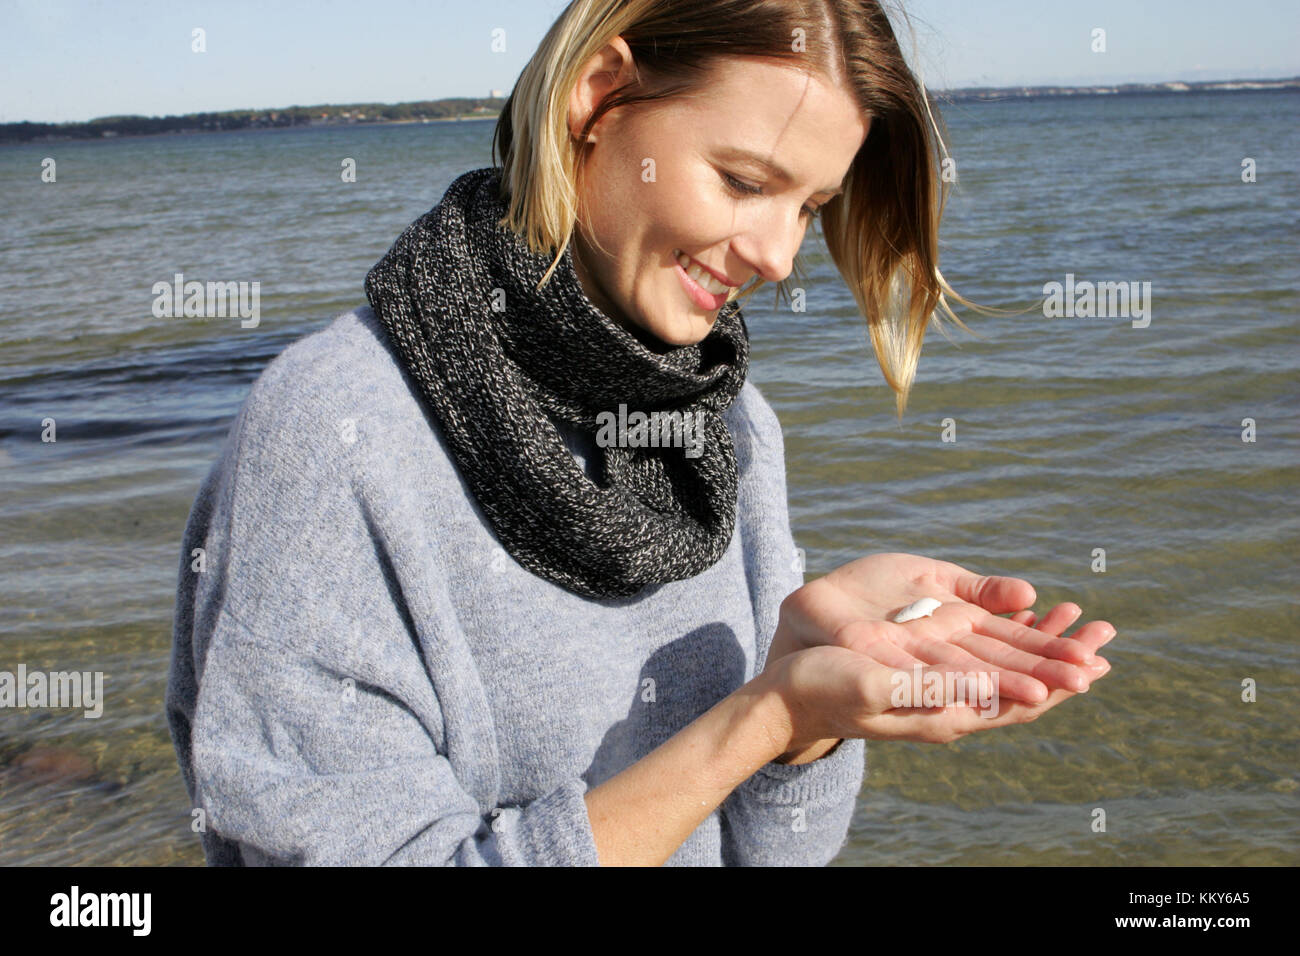 Femme, blonde, mer baltique, loisirs, ramasser des coquillages sur la plage Banque D'Images